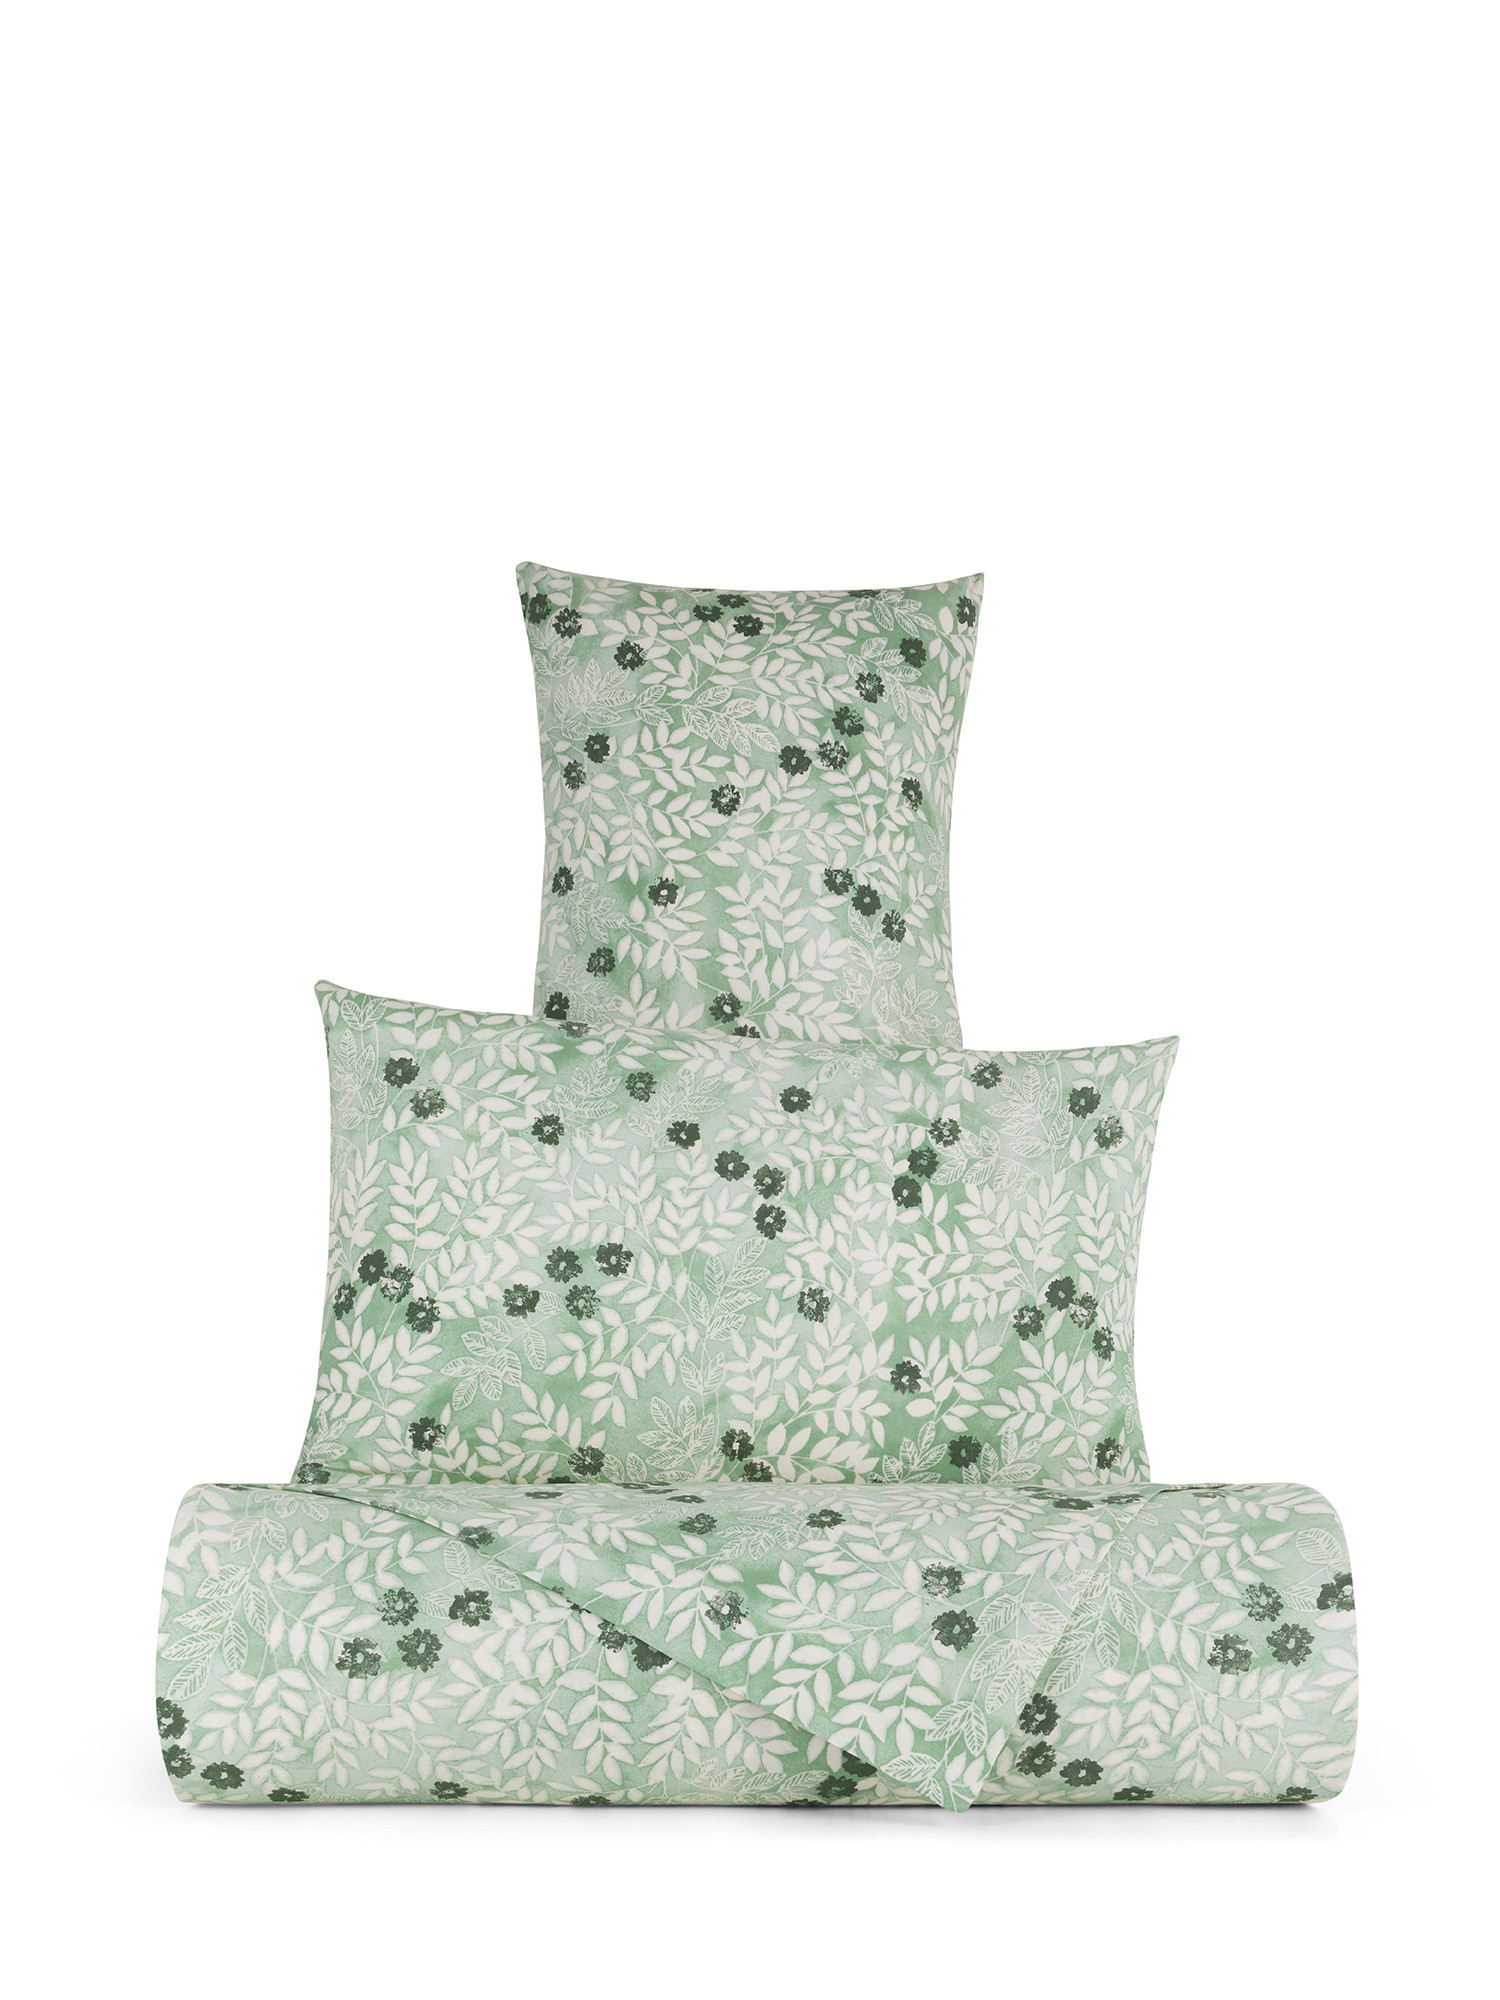 Parure copripiumino cotone percalle fantasia floreale, Verde, large image number 0